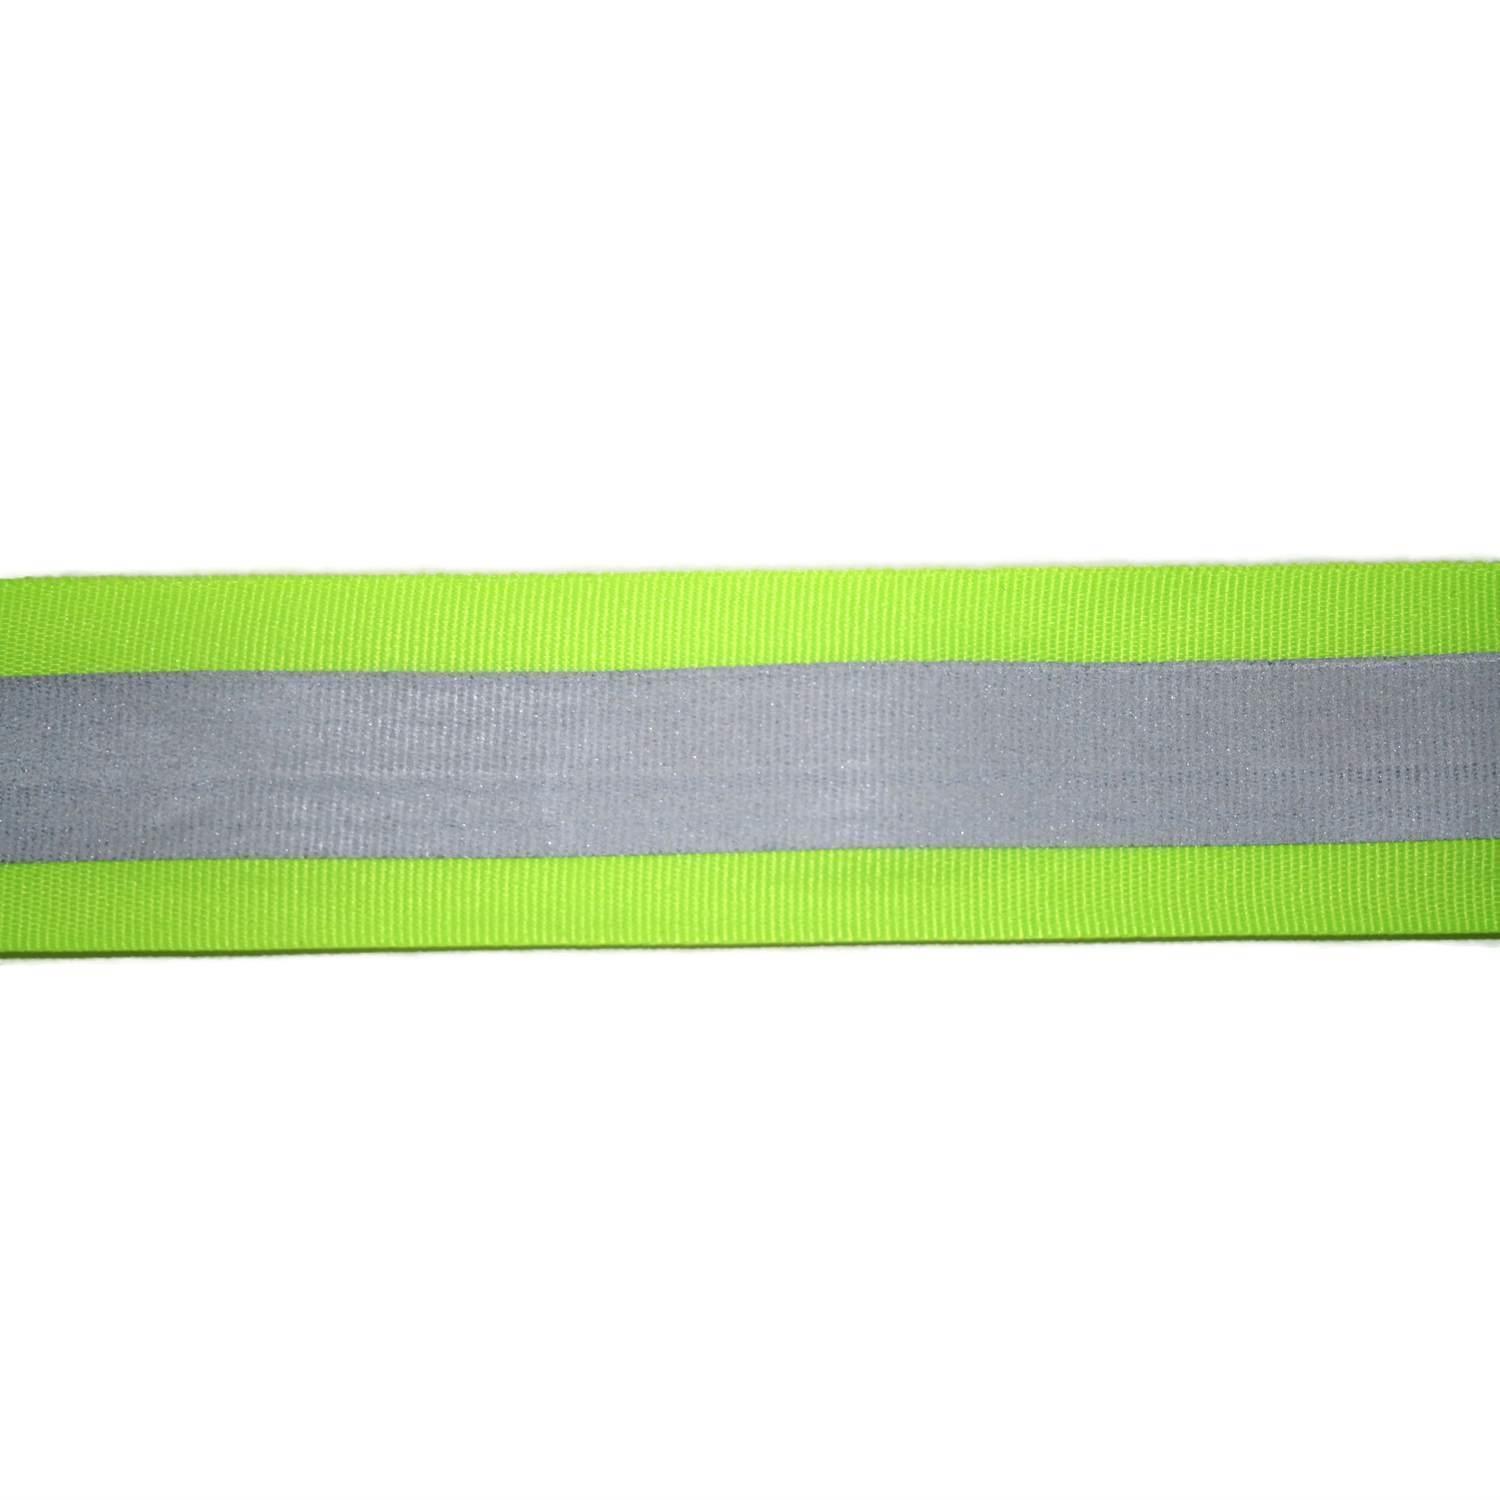 Reflektorband 70mm breit in 2 Farben gelb-silber 05 Meter